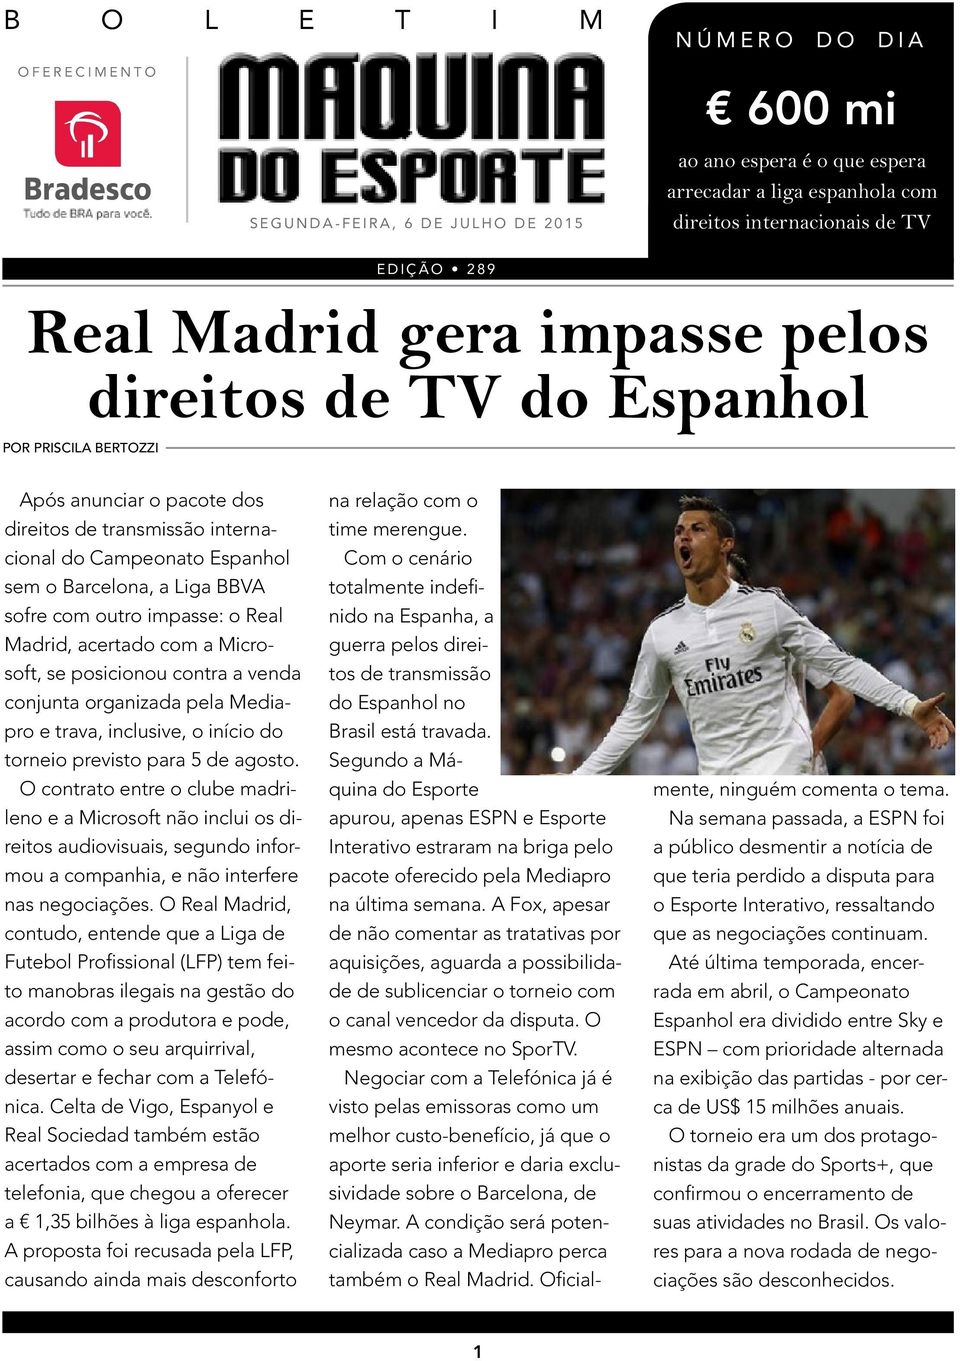 impasse: o Real Madrid, acertado com a Microsoft, se posicionou contra a venda conjunta organizada pela Mediapro e trava, inclusive, o início do torneio previsto para 5 de agosto.